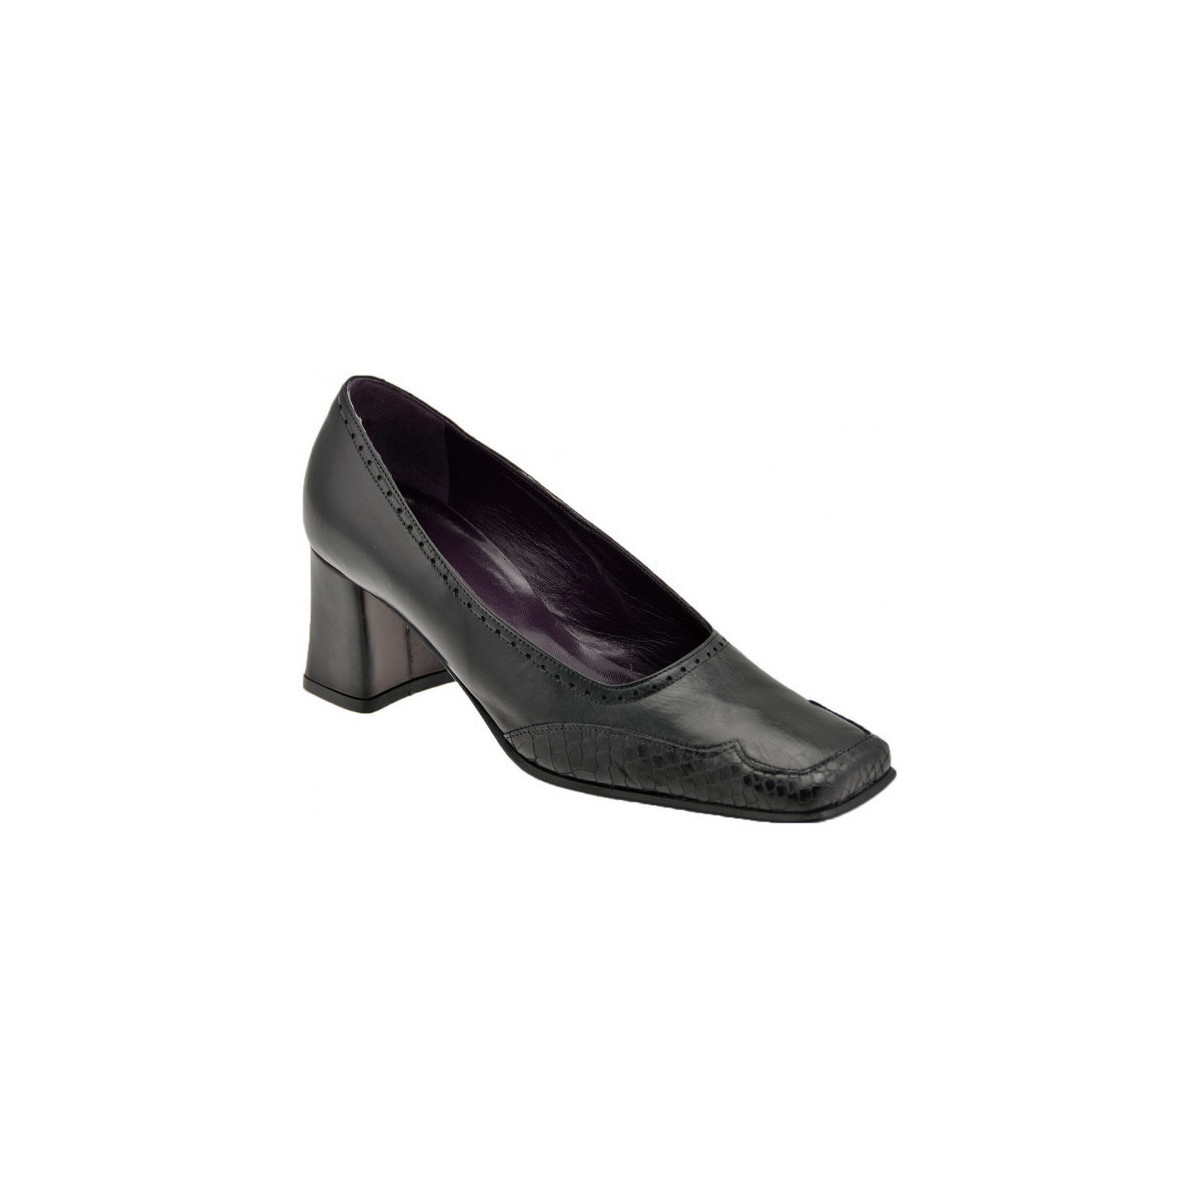 Zapatos Mujer Deportivas Moda Bocci 1926 Tacco60 Collo Negro